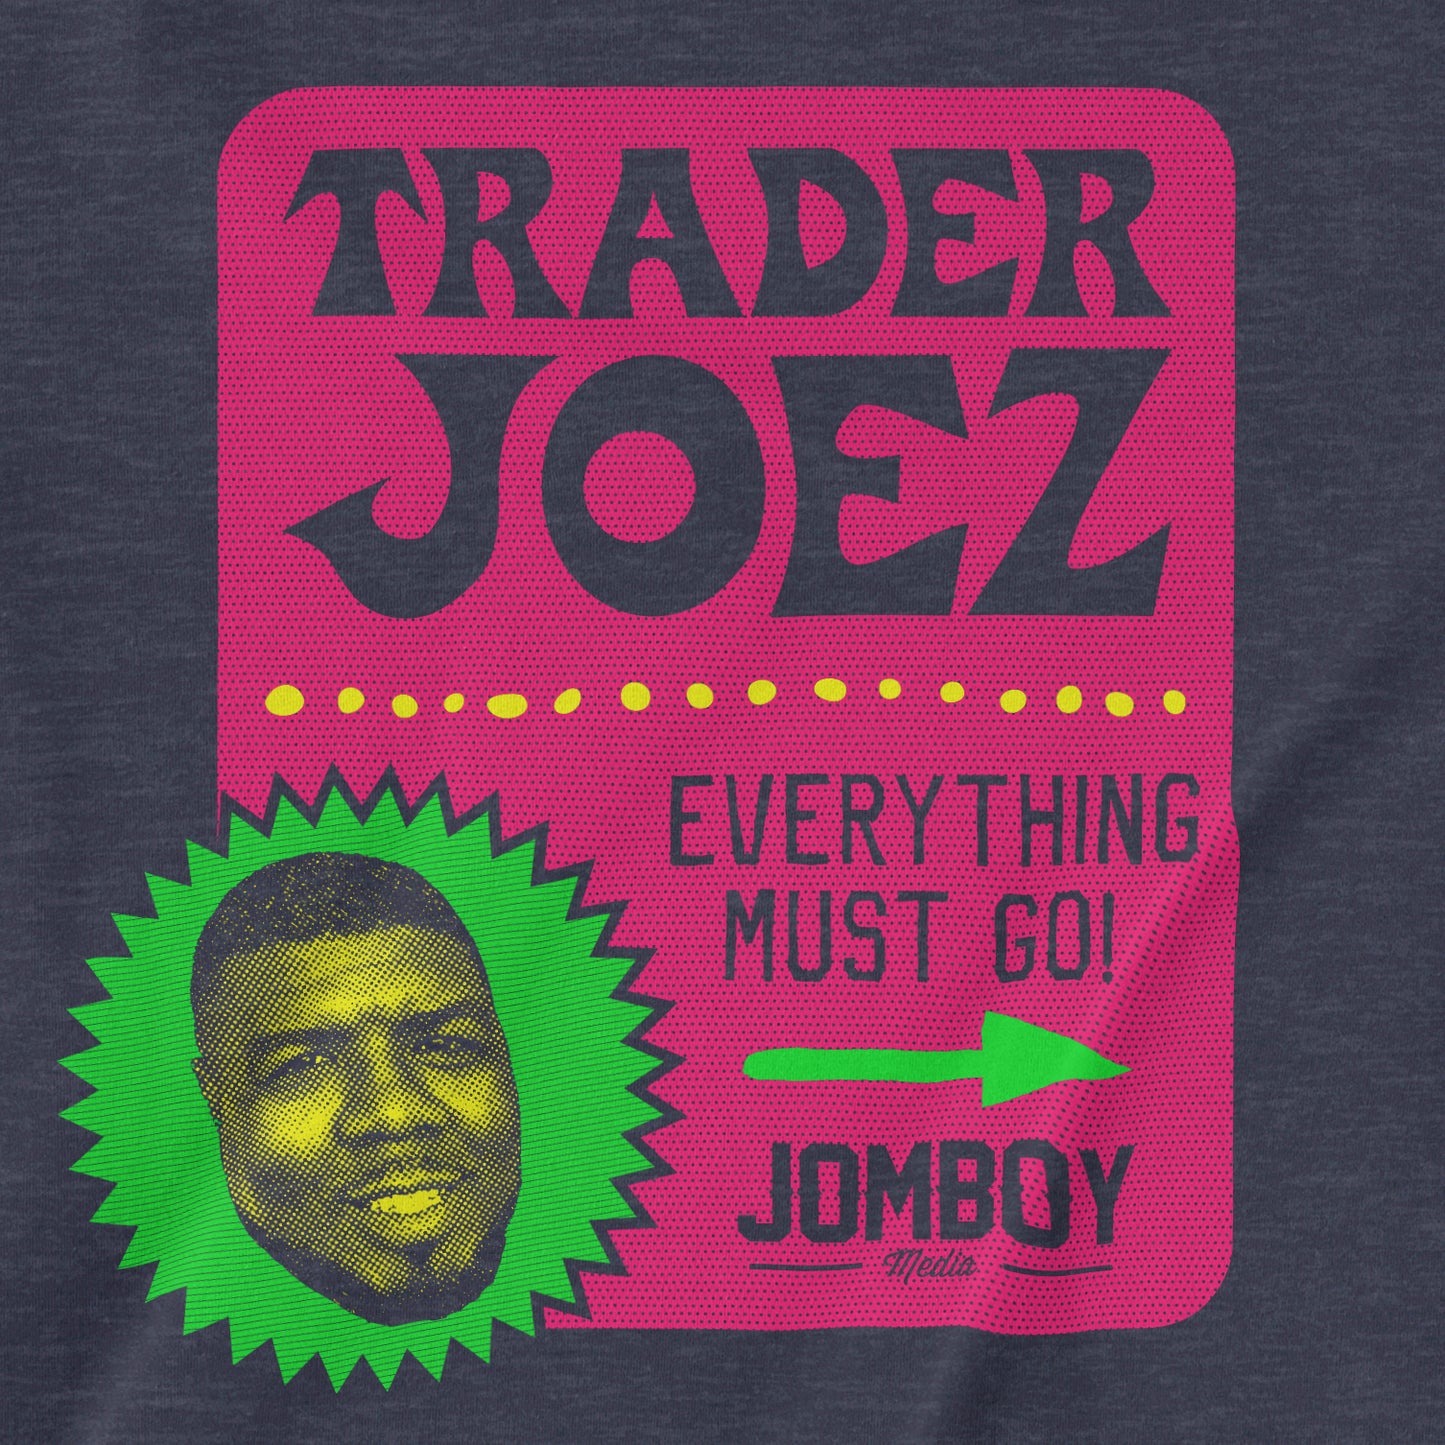 Trader Joez | T-Shirt